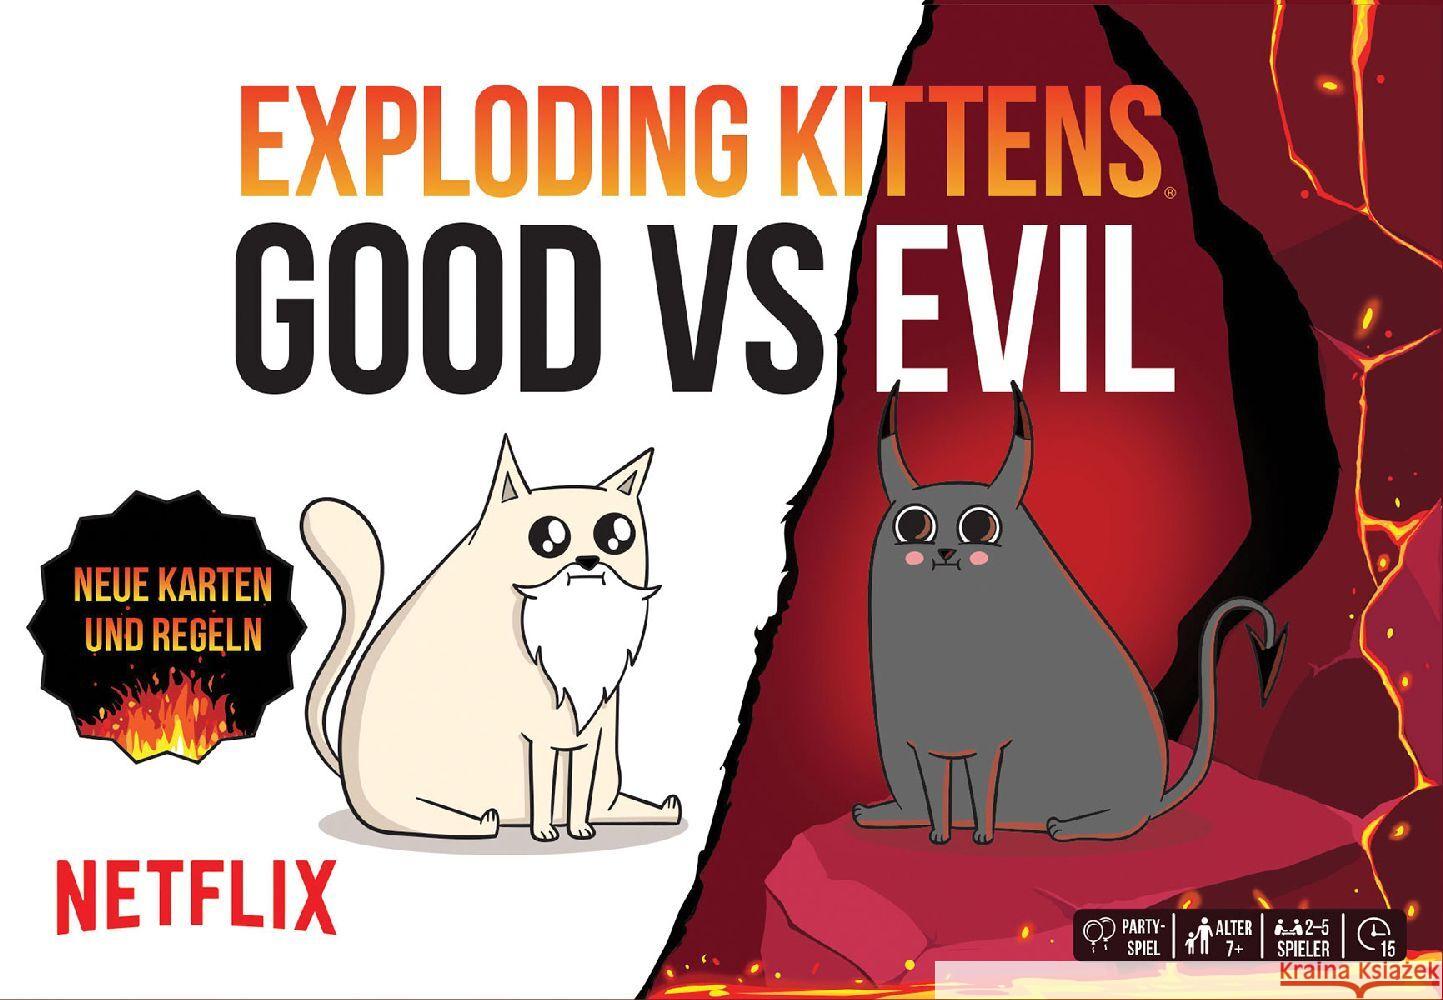 Exploding Kittens: Good vs. Evil Inman, Matthew, Small, Shane, Lee, Elan 0810083044712 Exploding Kittens